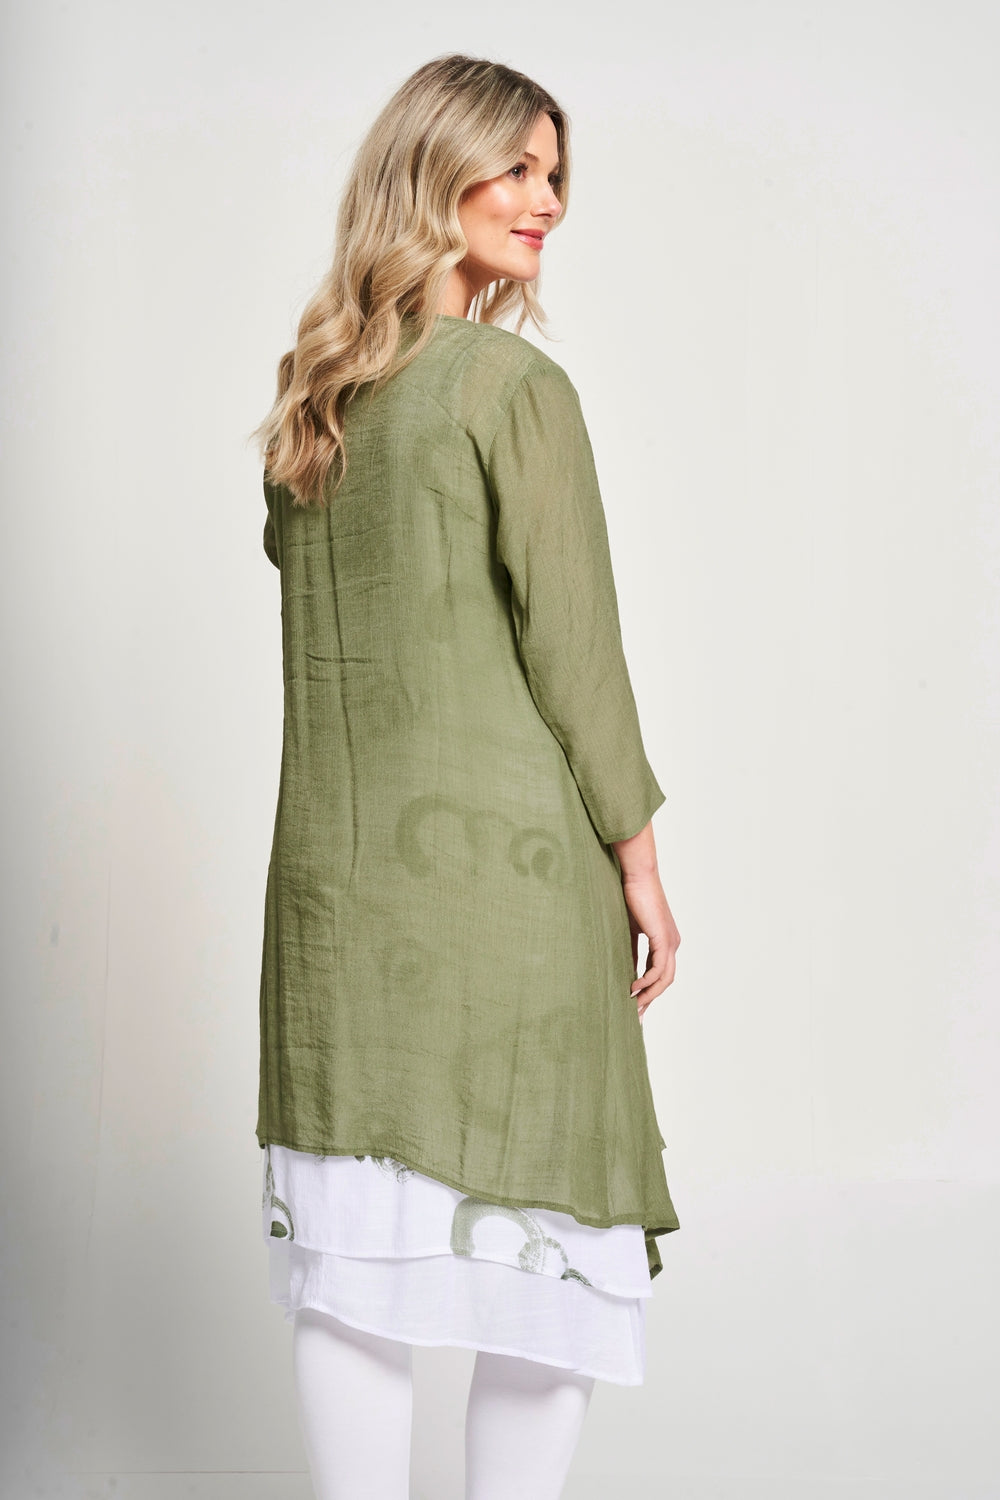 Saloos Sleeveless Print Dress & Jacket Twinset